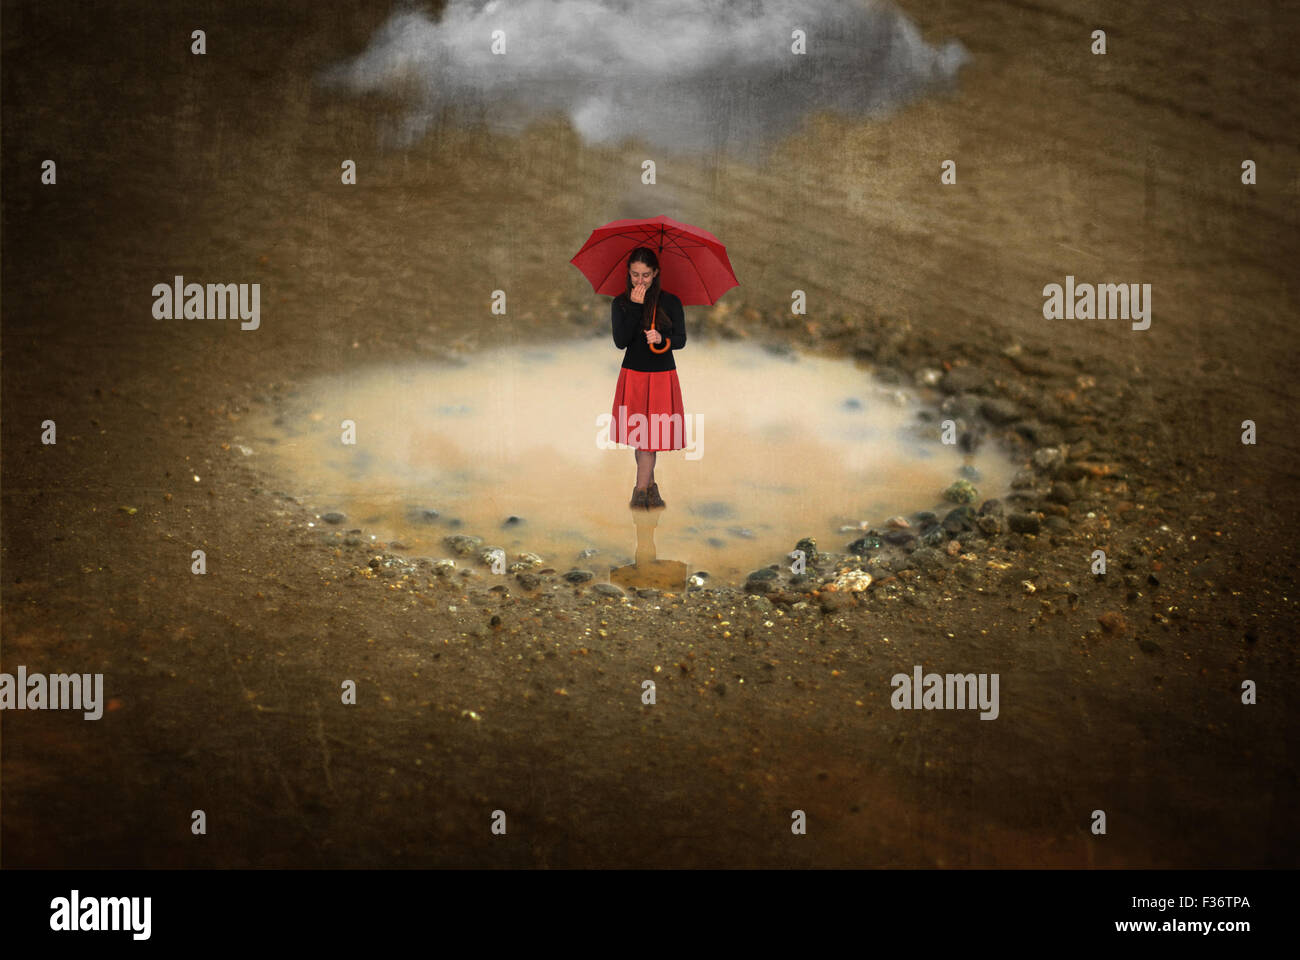 Miniatur-Mädchen stand in einer Pfütze mit einem roten Regenschirm mit  einer großen Wolke Stockfotografie - Alamy